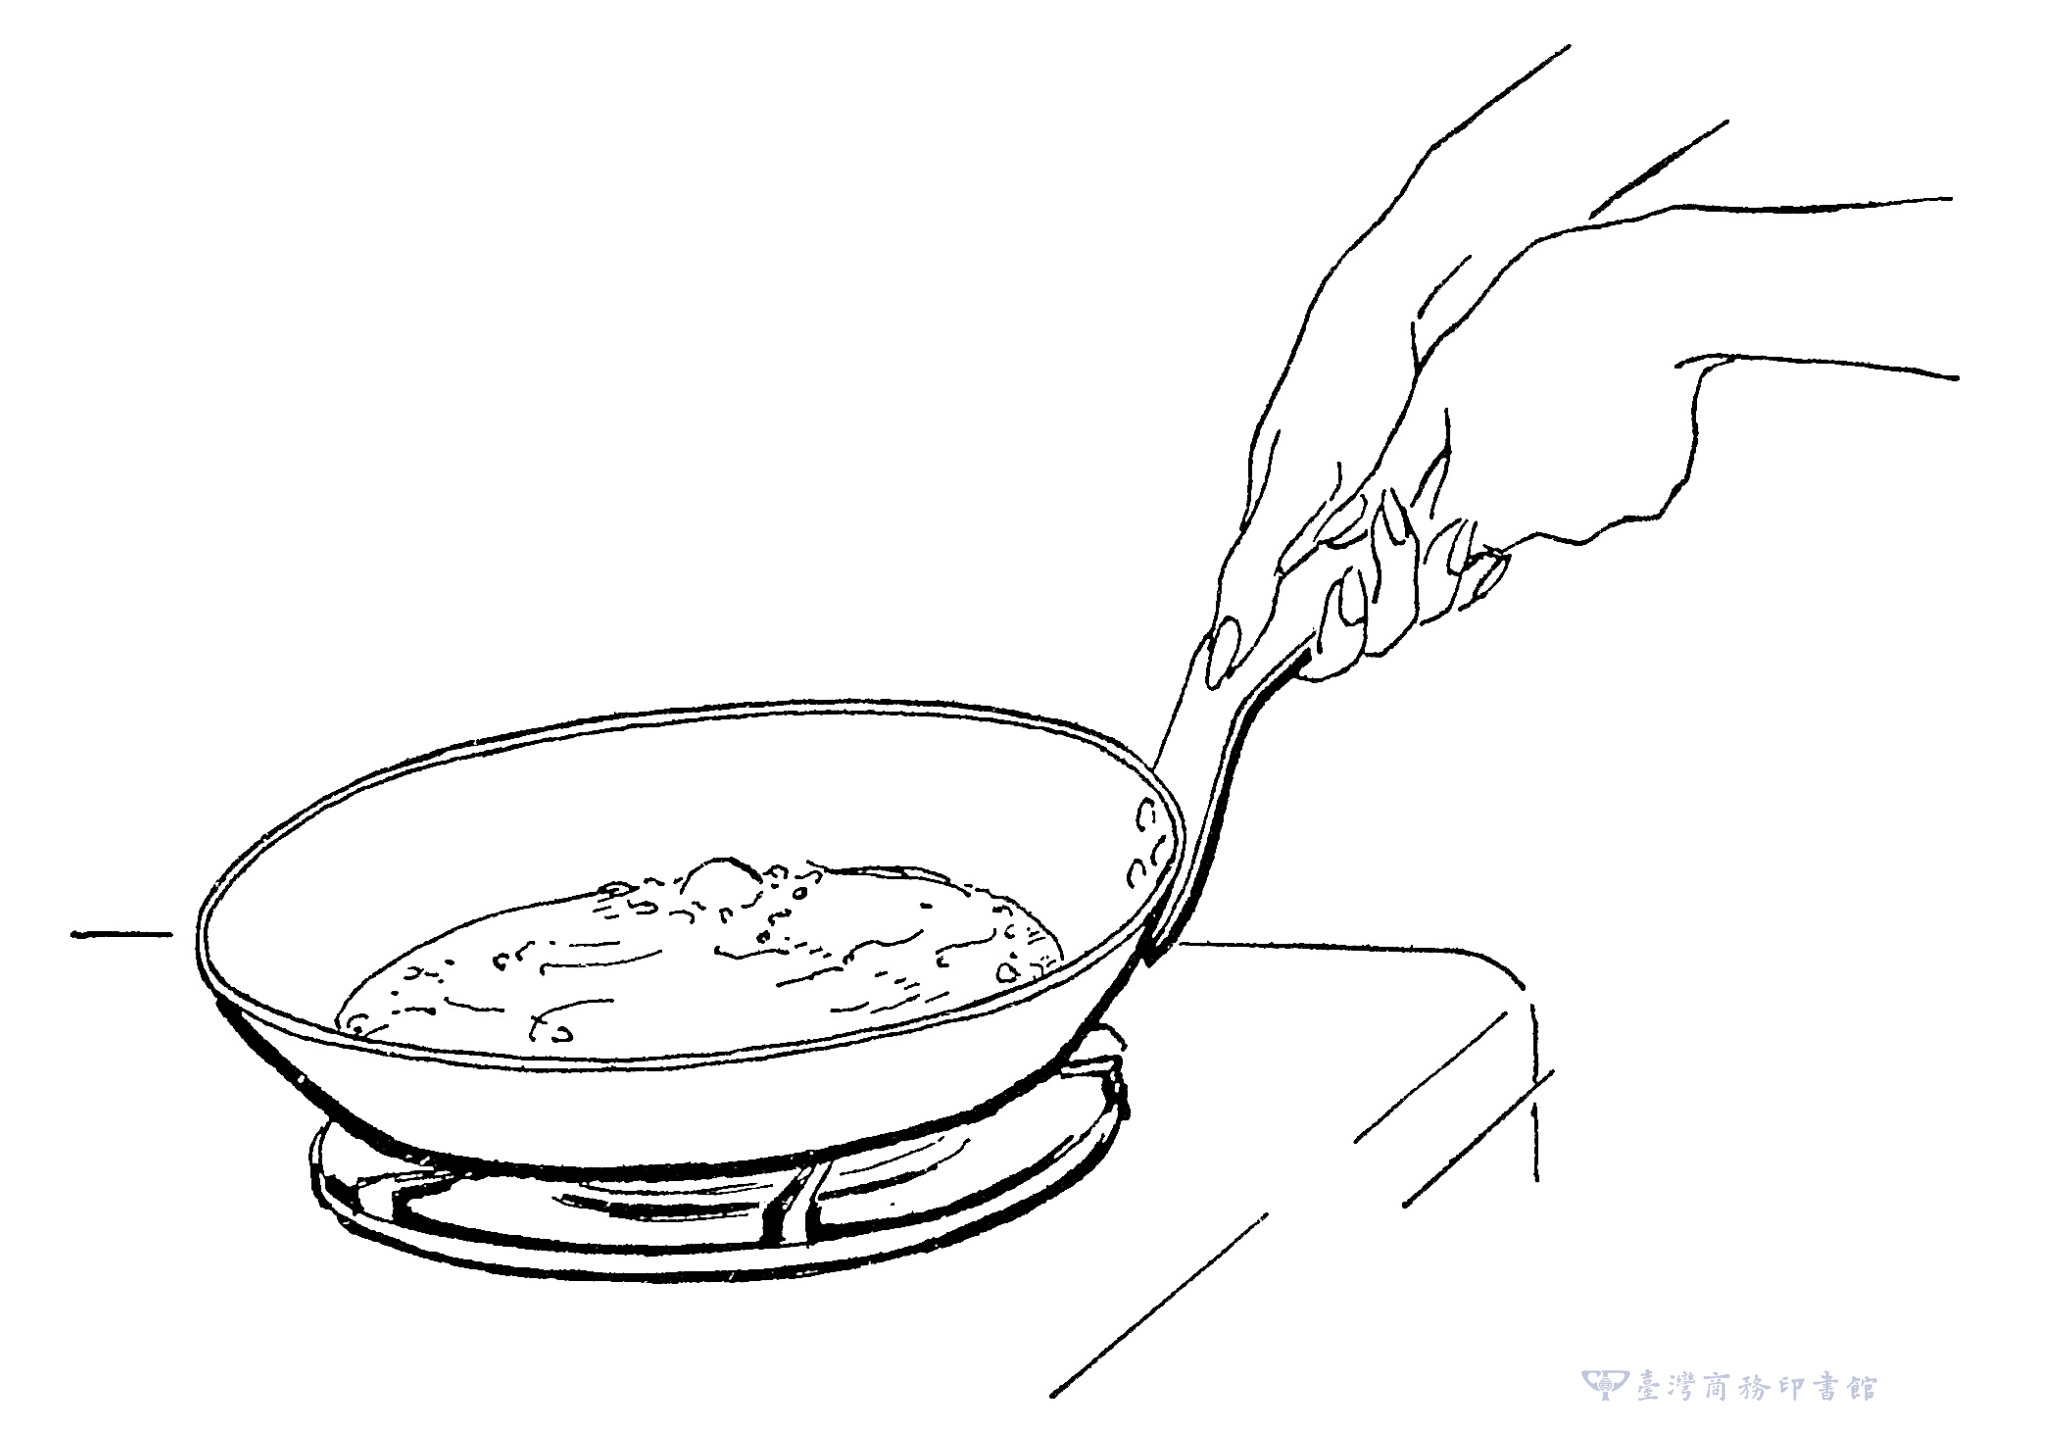 圖07：手抓著鍋柄，大拇指在上，馬上開始用力快速朝自己的方向抽拉鍋身，鍋子和爐火之間約維持20 度角，每秒抽拉一下。（圖片來源：臺灣商務提供）